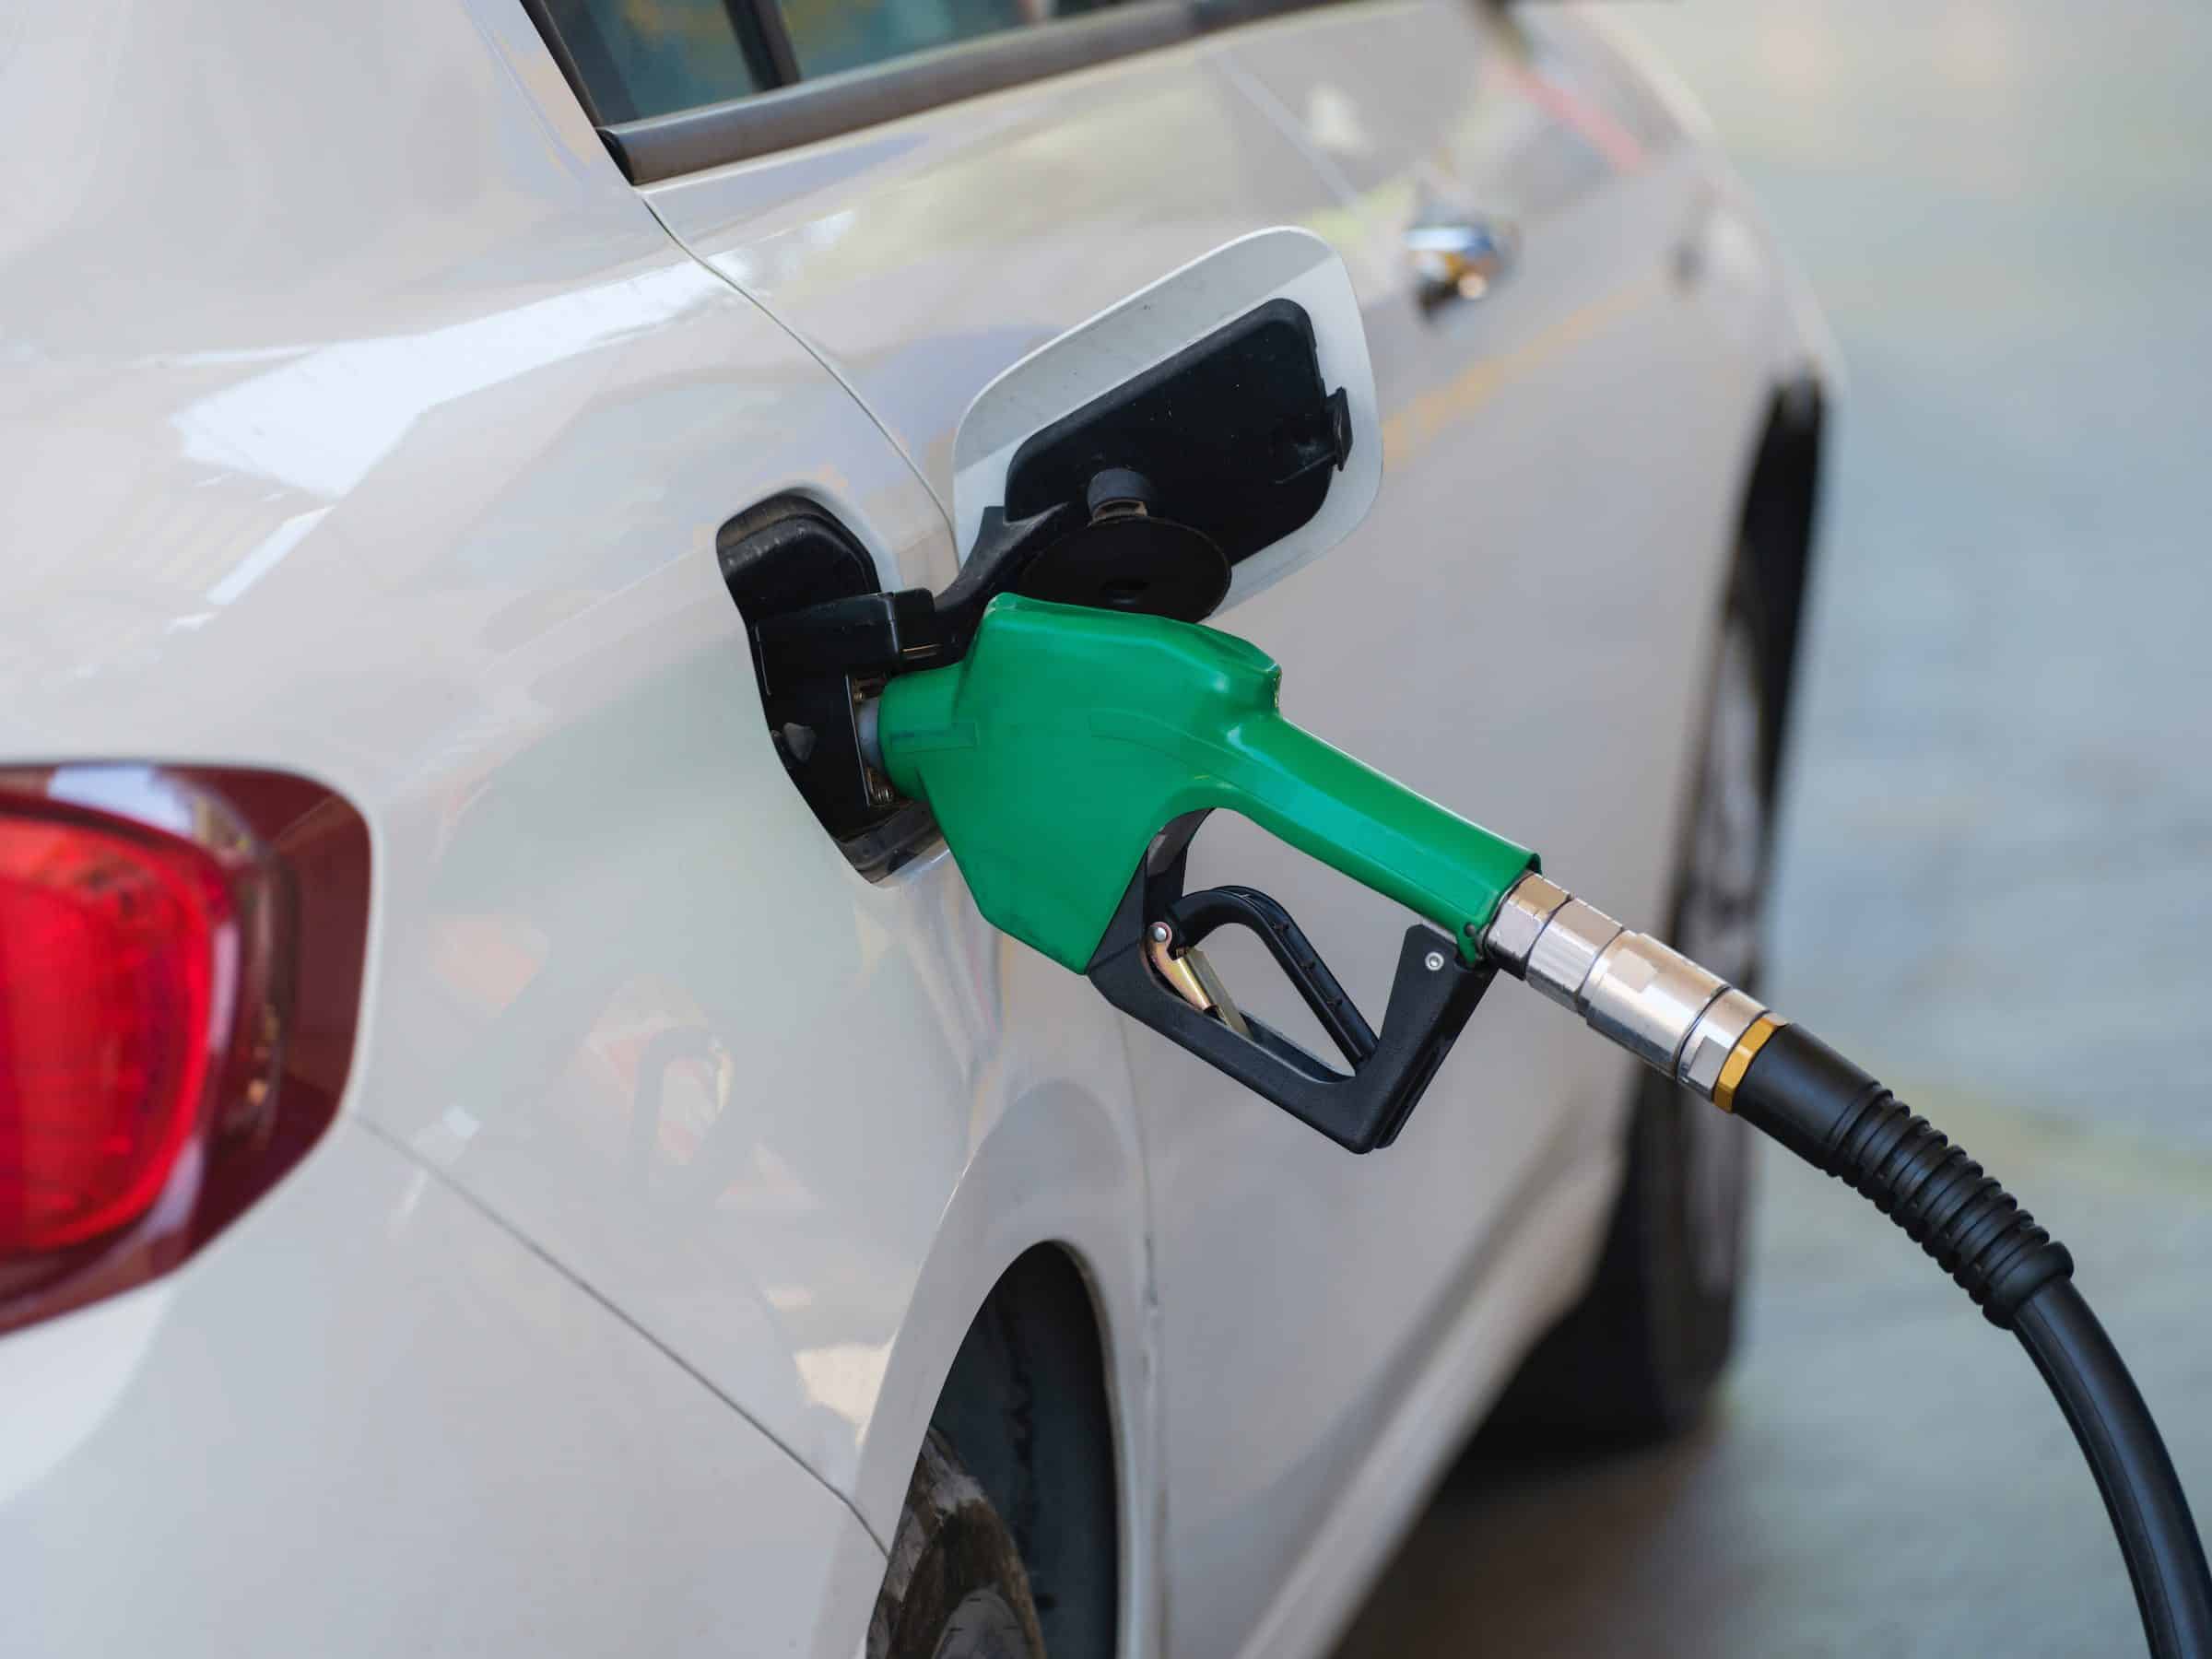 Featured image for “Tarjetas con descuento en gasolina: repostar gasolina más barato”